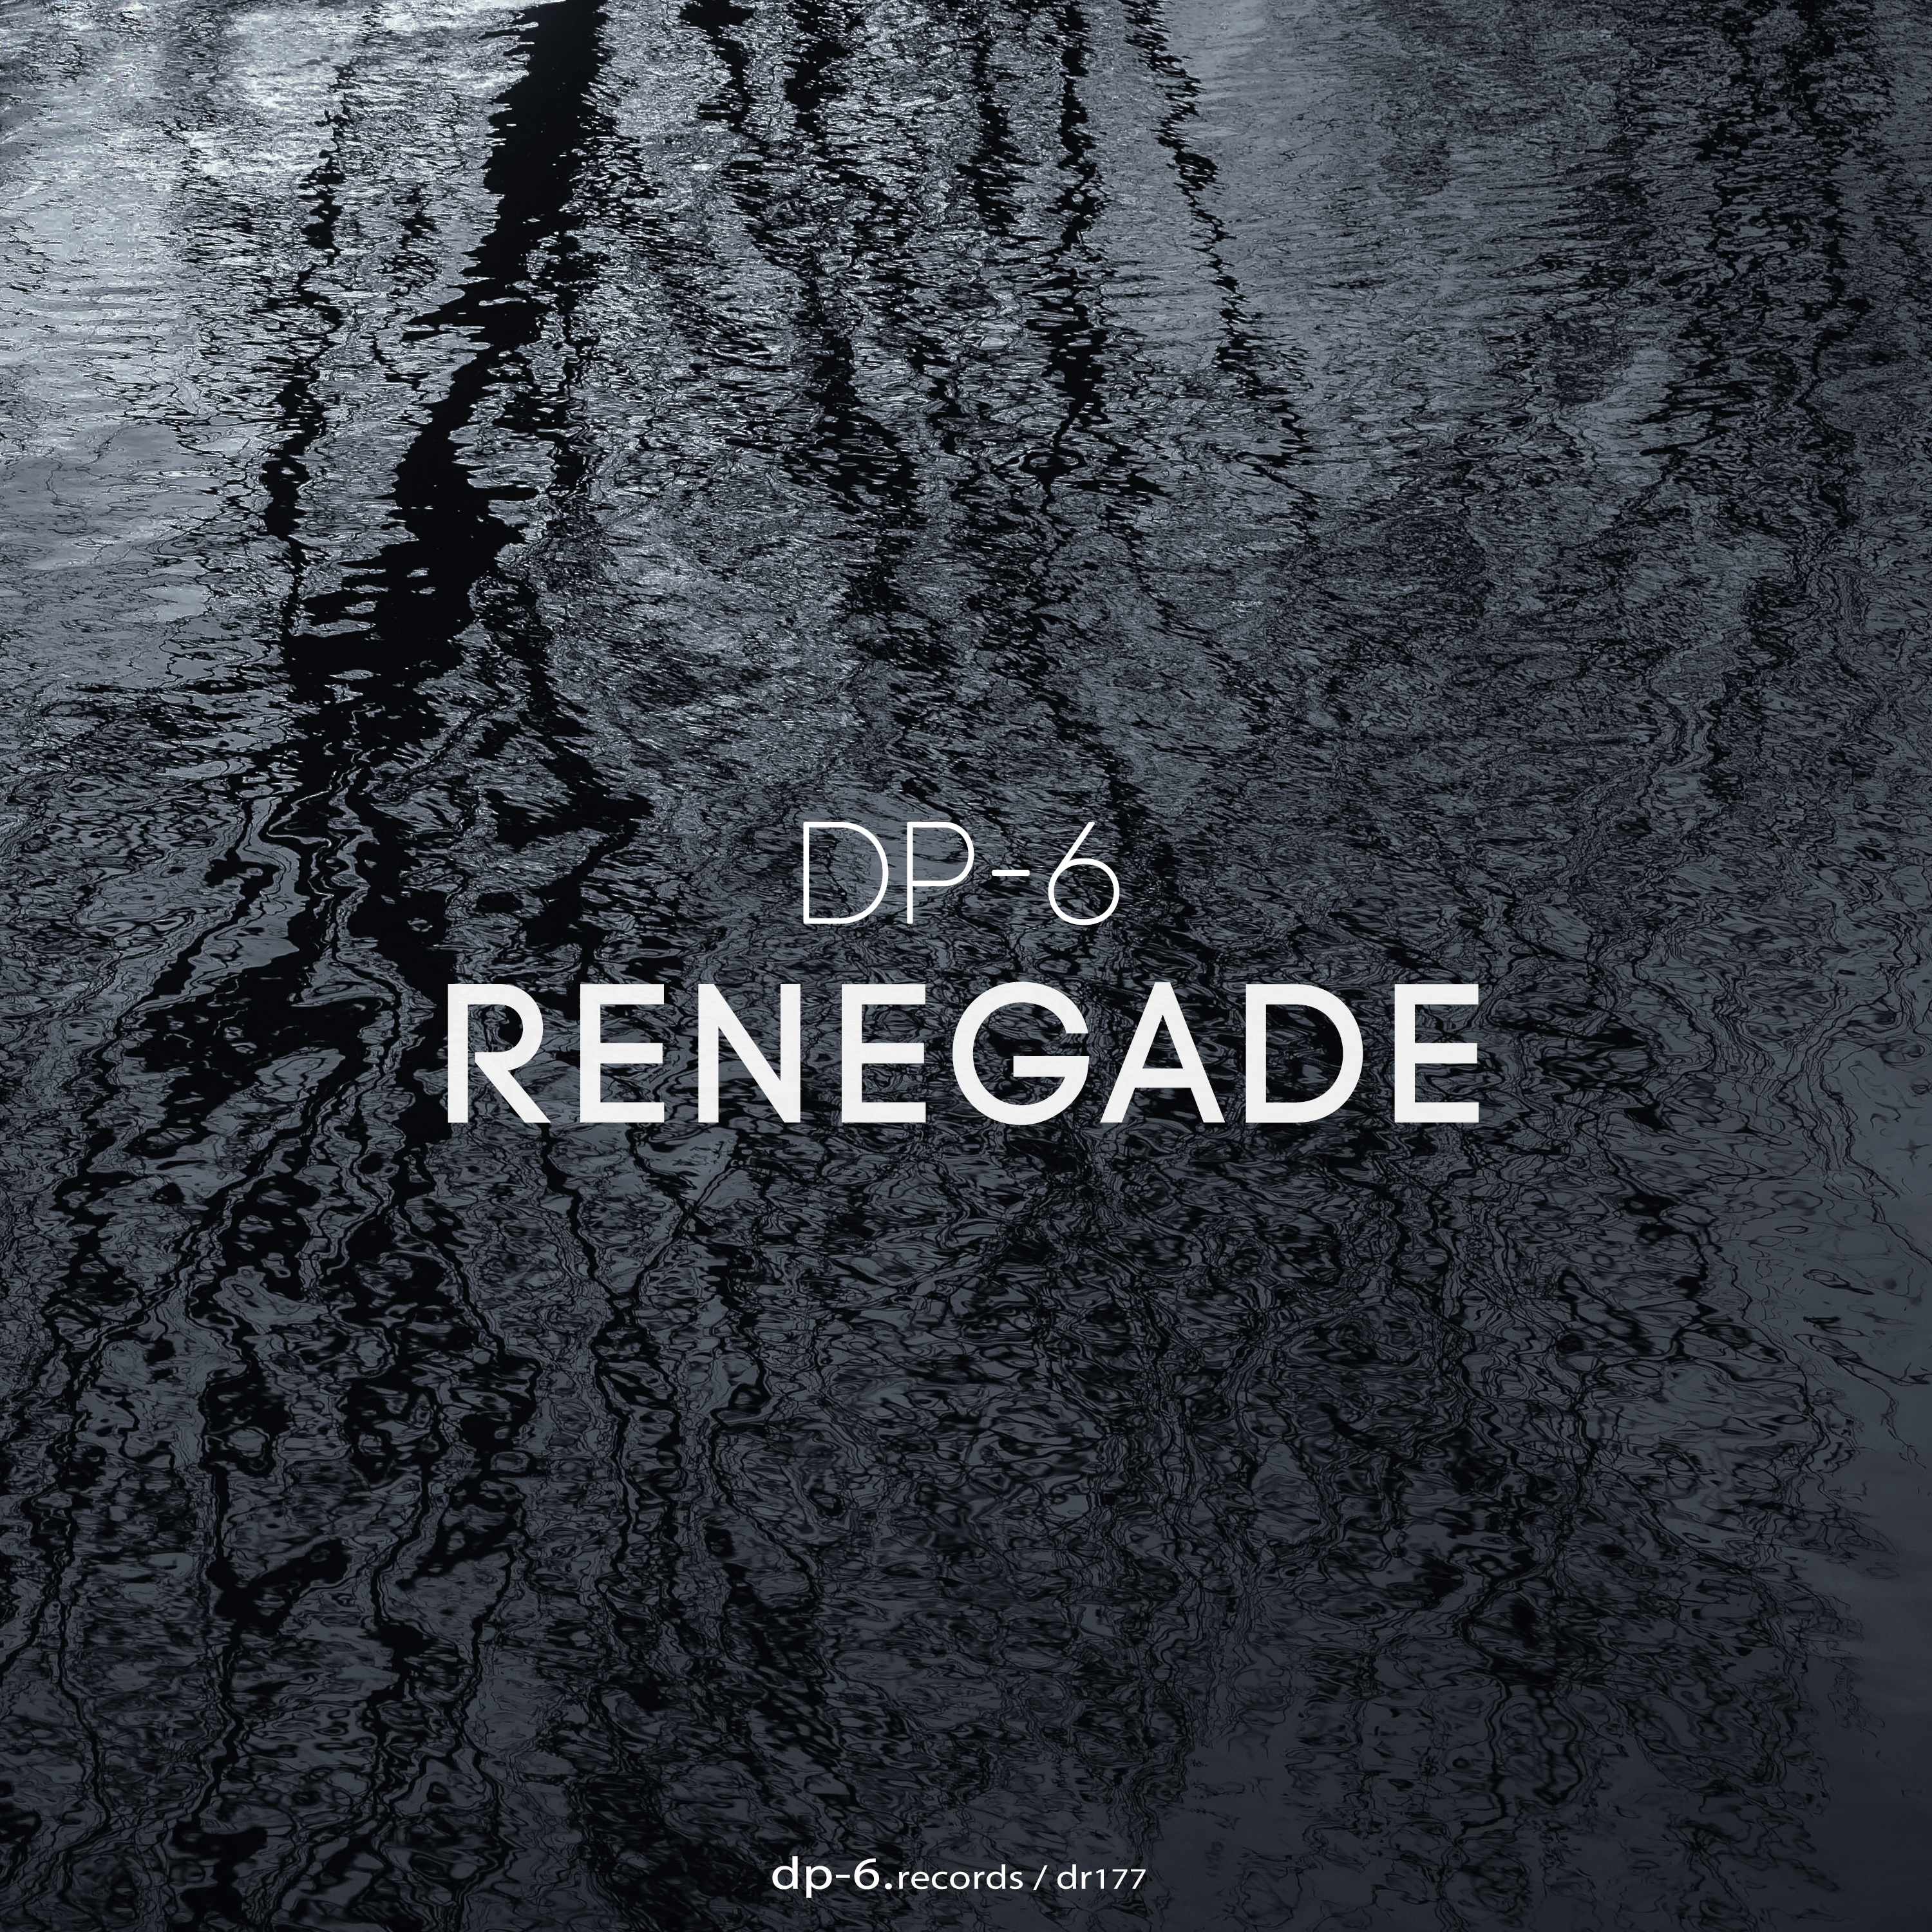 DP-6: Renegade